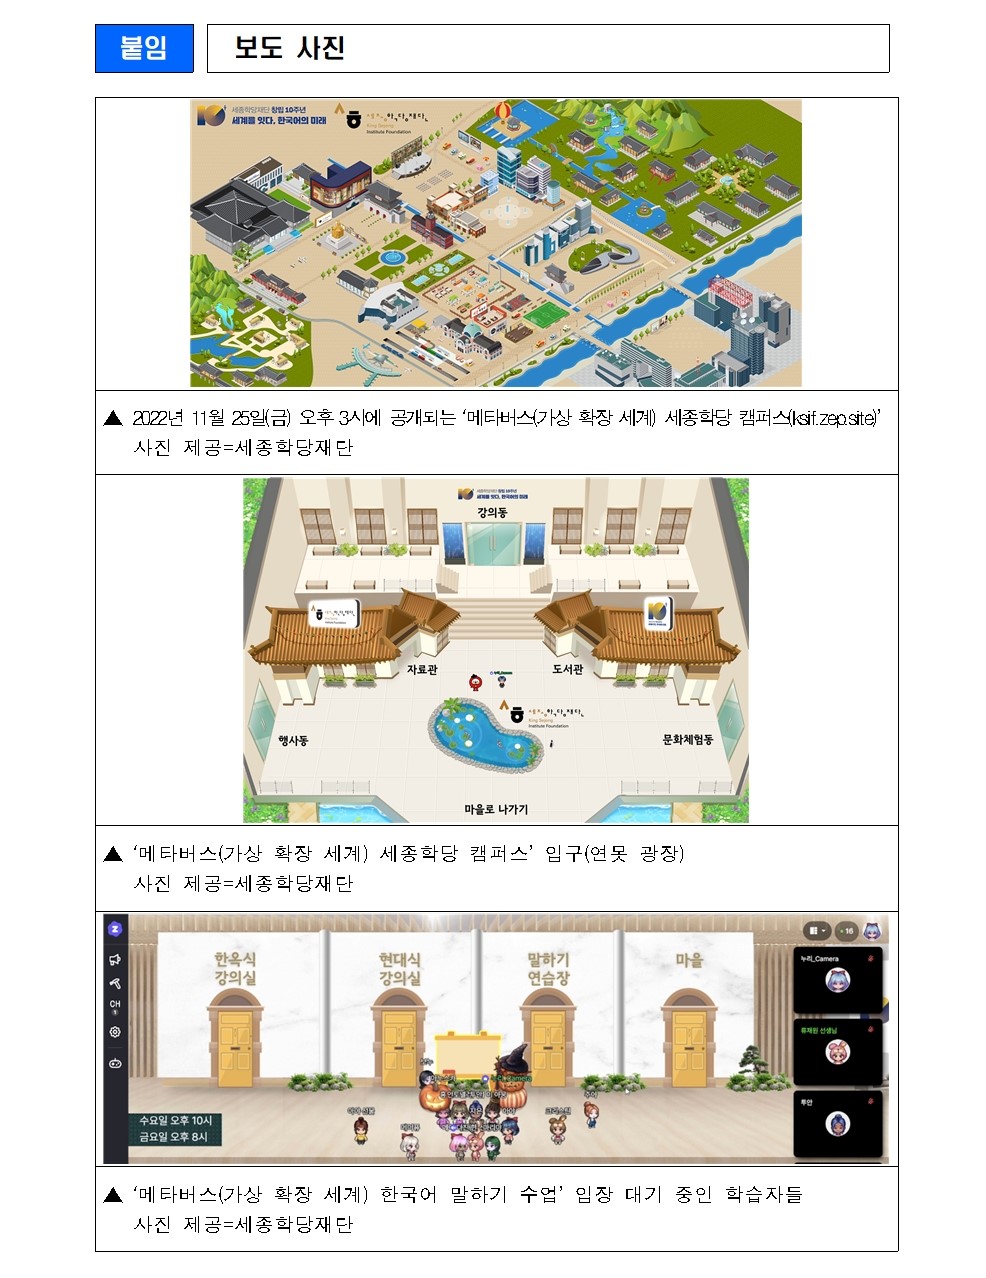 메타버스 세종학당 캠퍼스 누비며 재미있게 한국어 공부해요!(보도자료)003